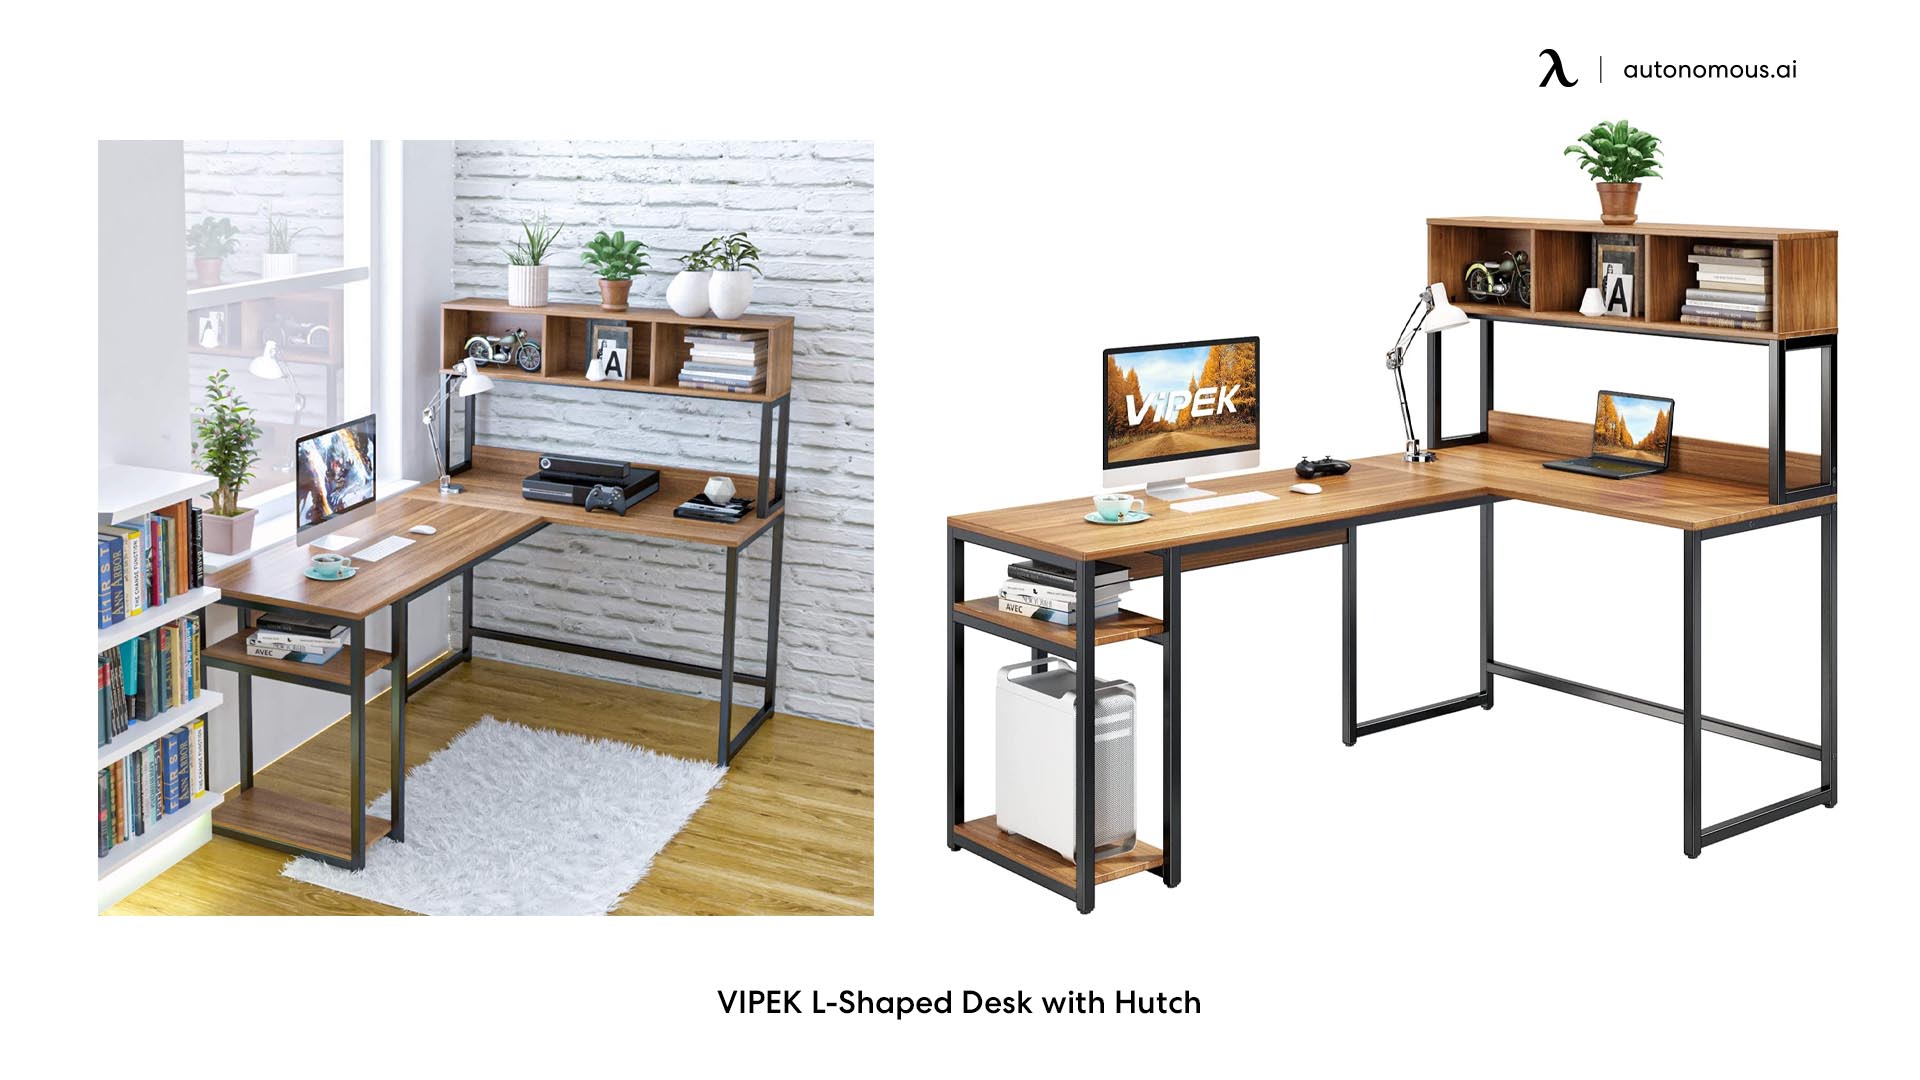 Vipek L-shaped Desk